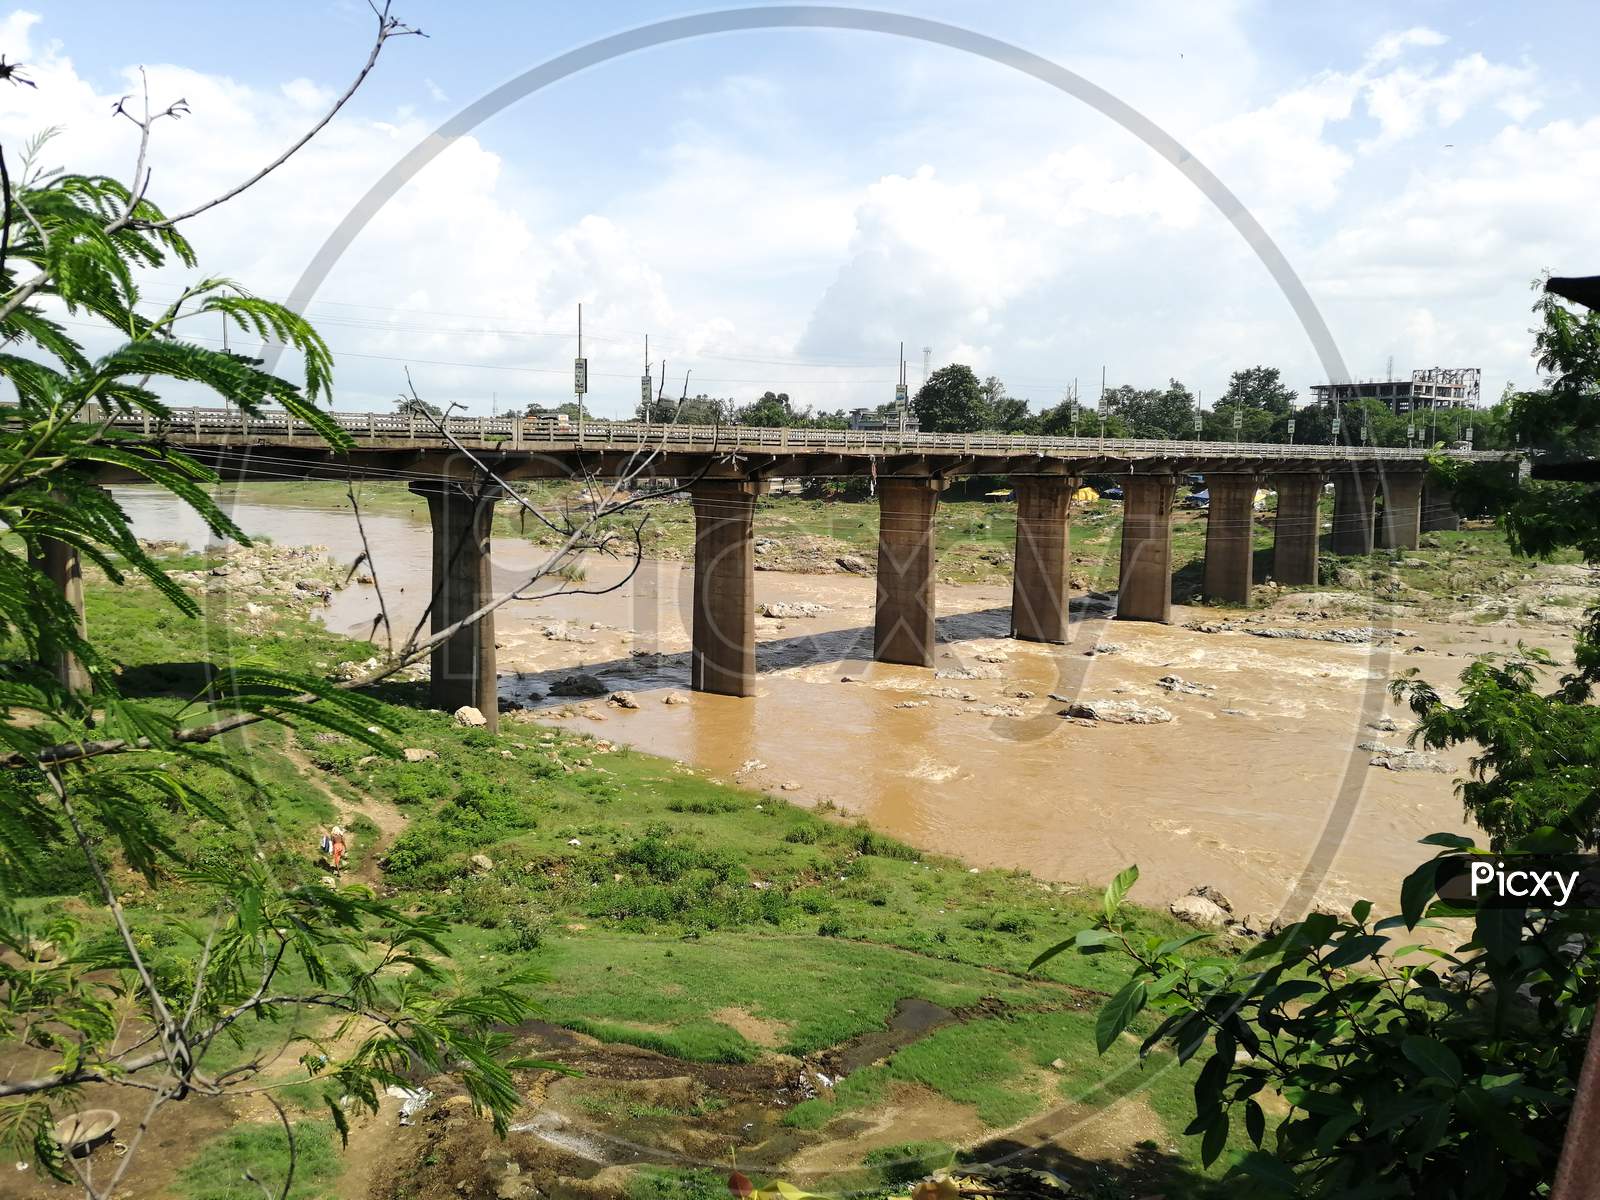 Bridge over the damodar river